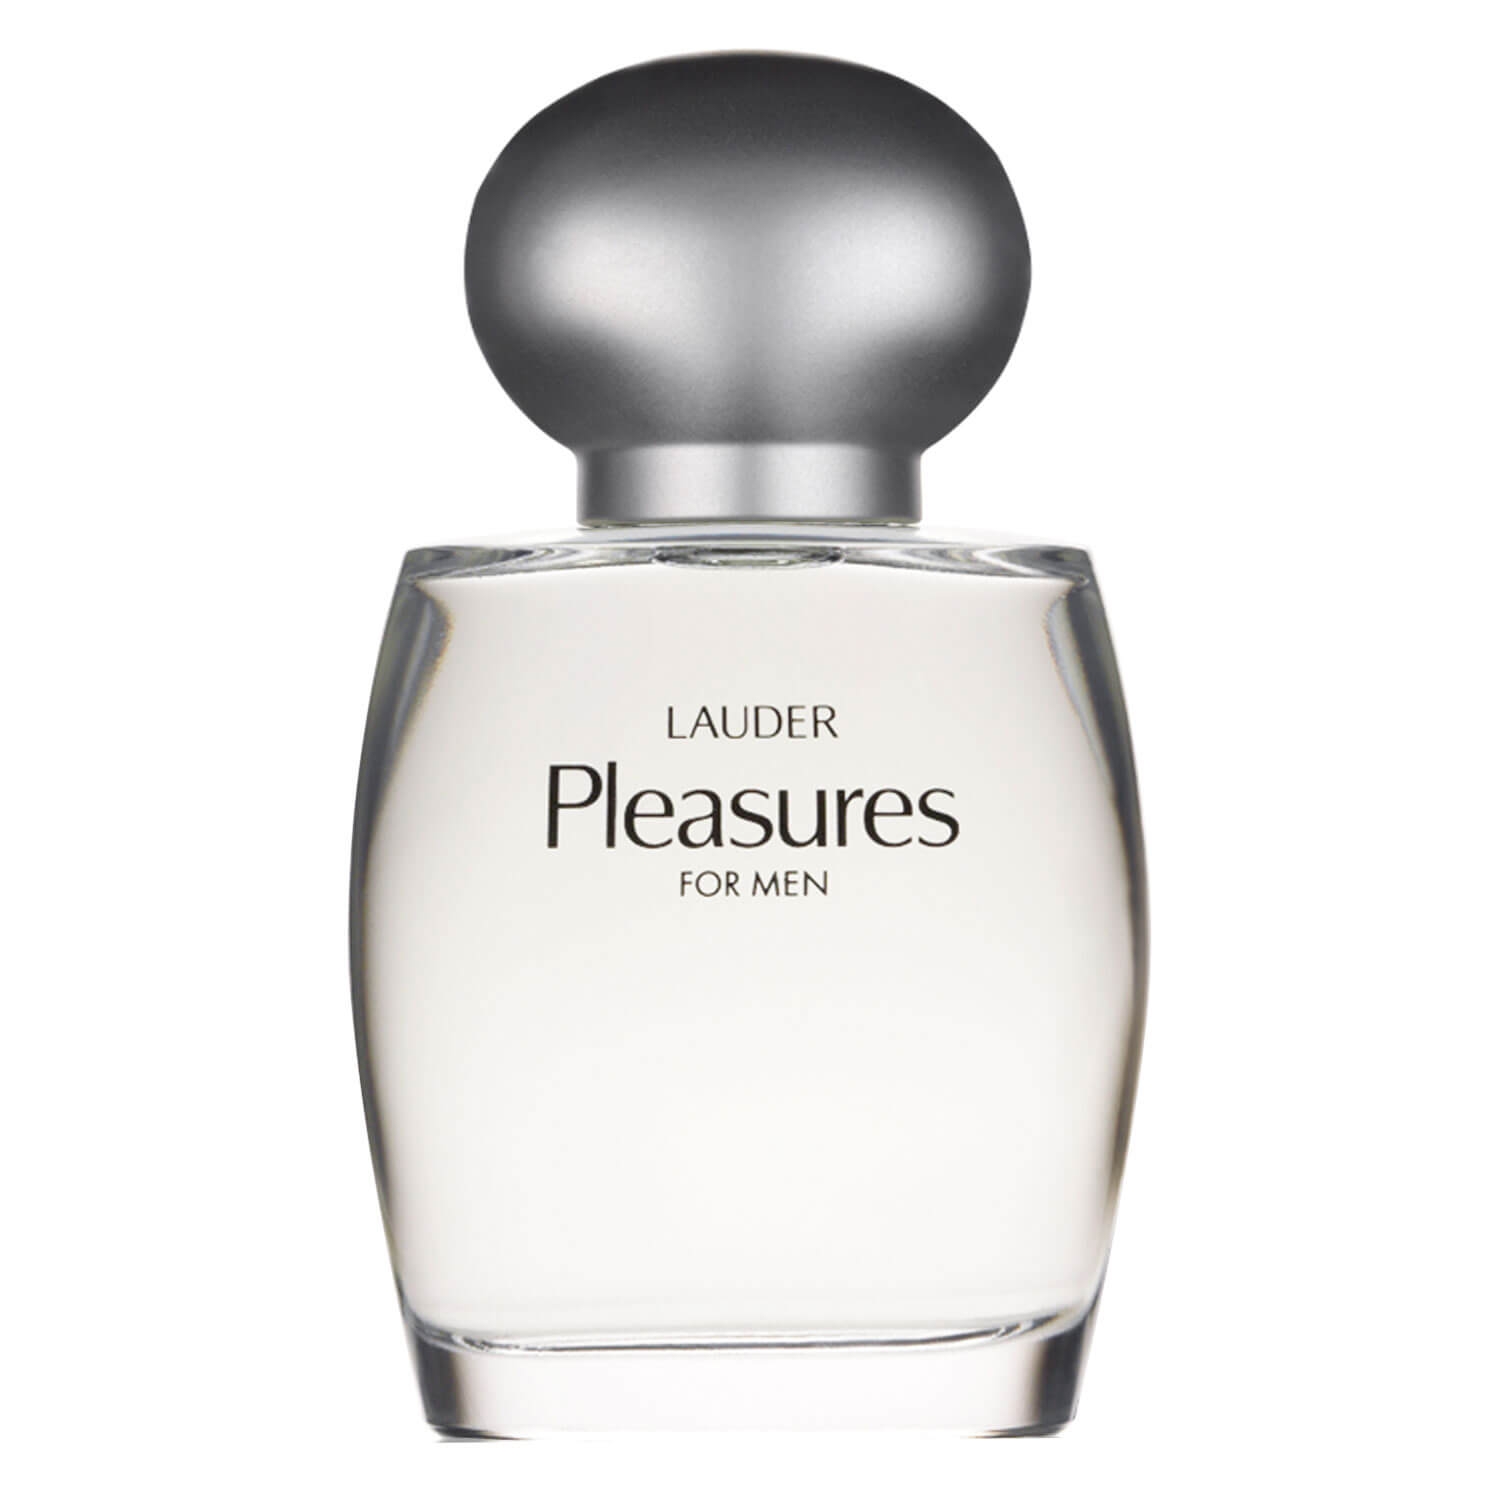 Produktbild von Pleasures - For Men Cologne Spray